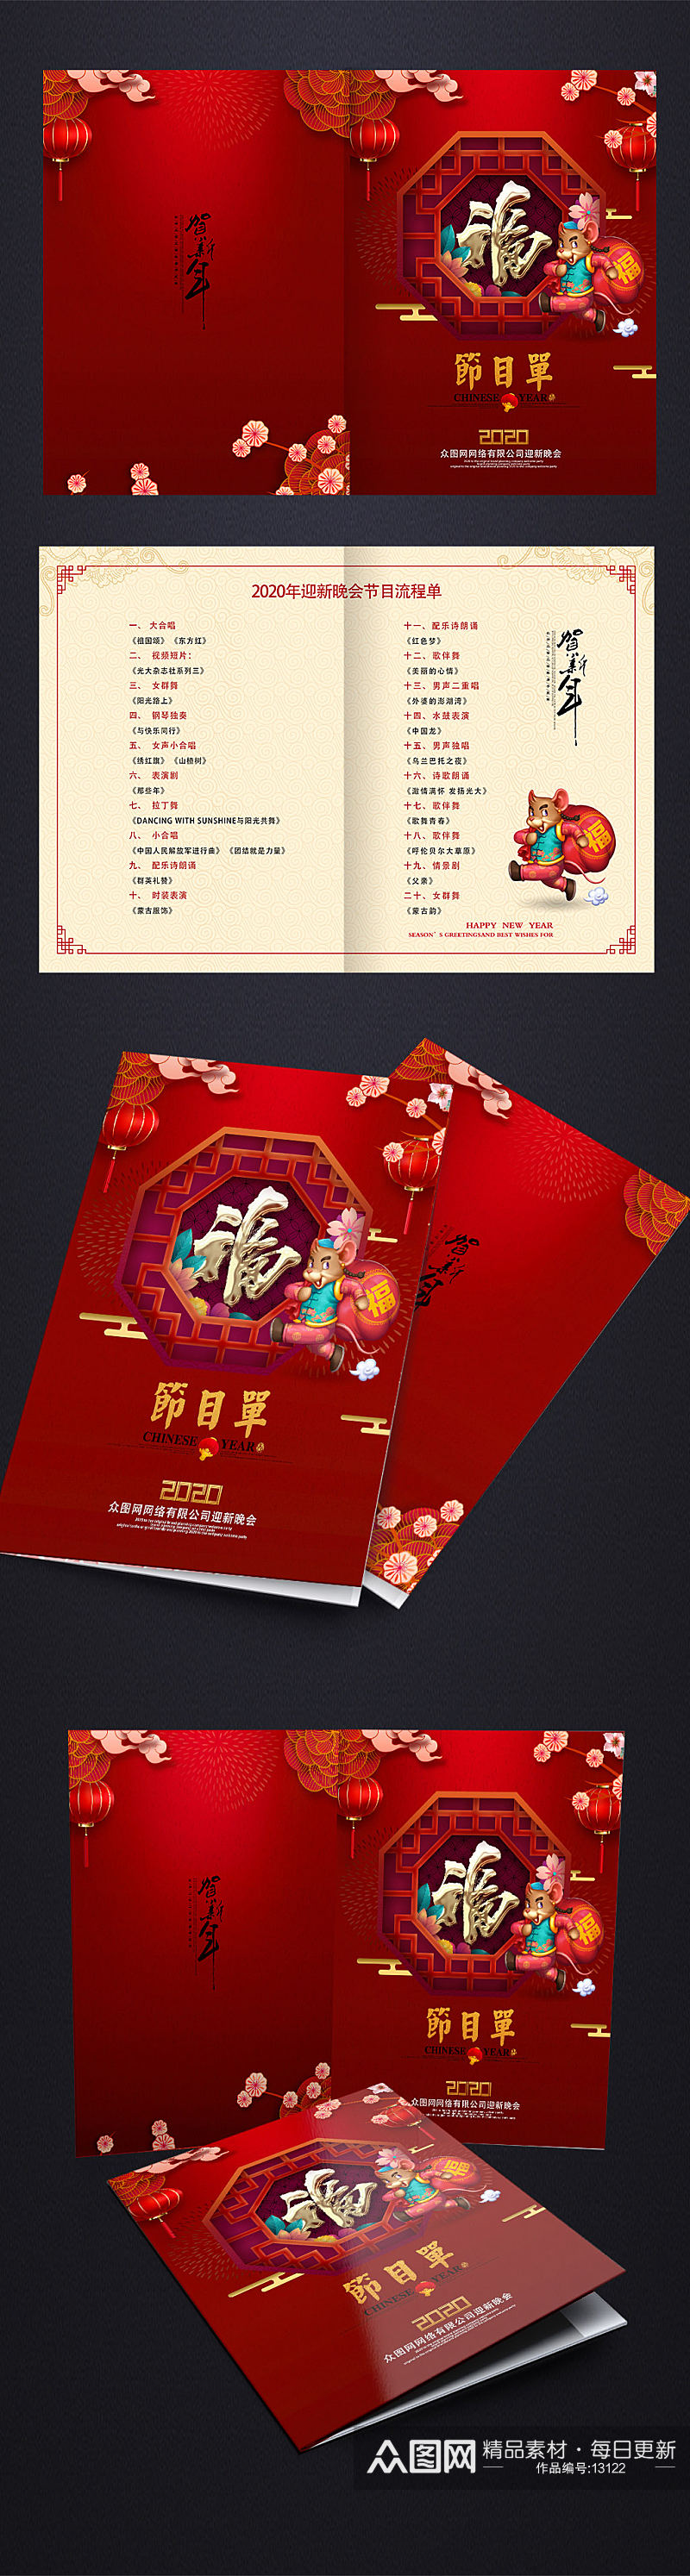 鼠年福字春节节目单设计素材